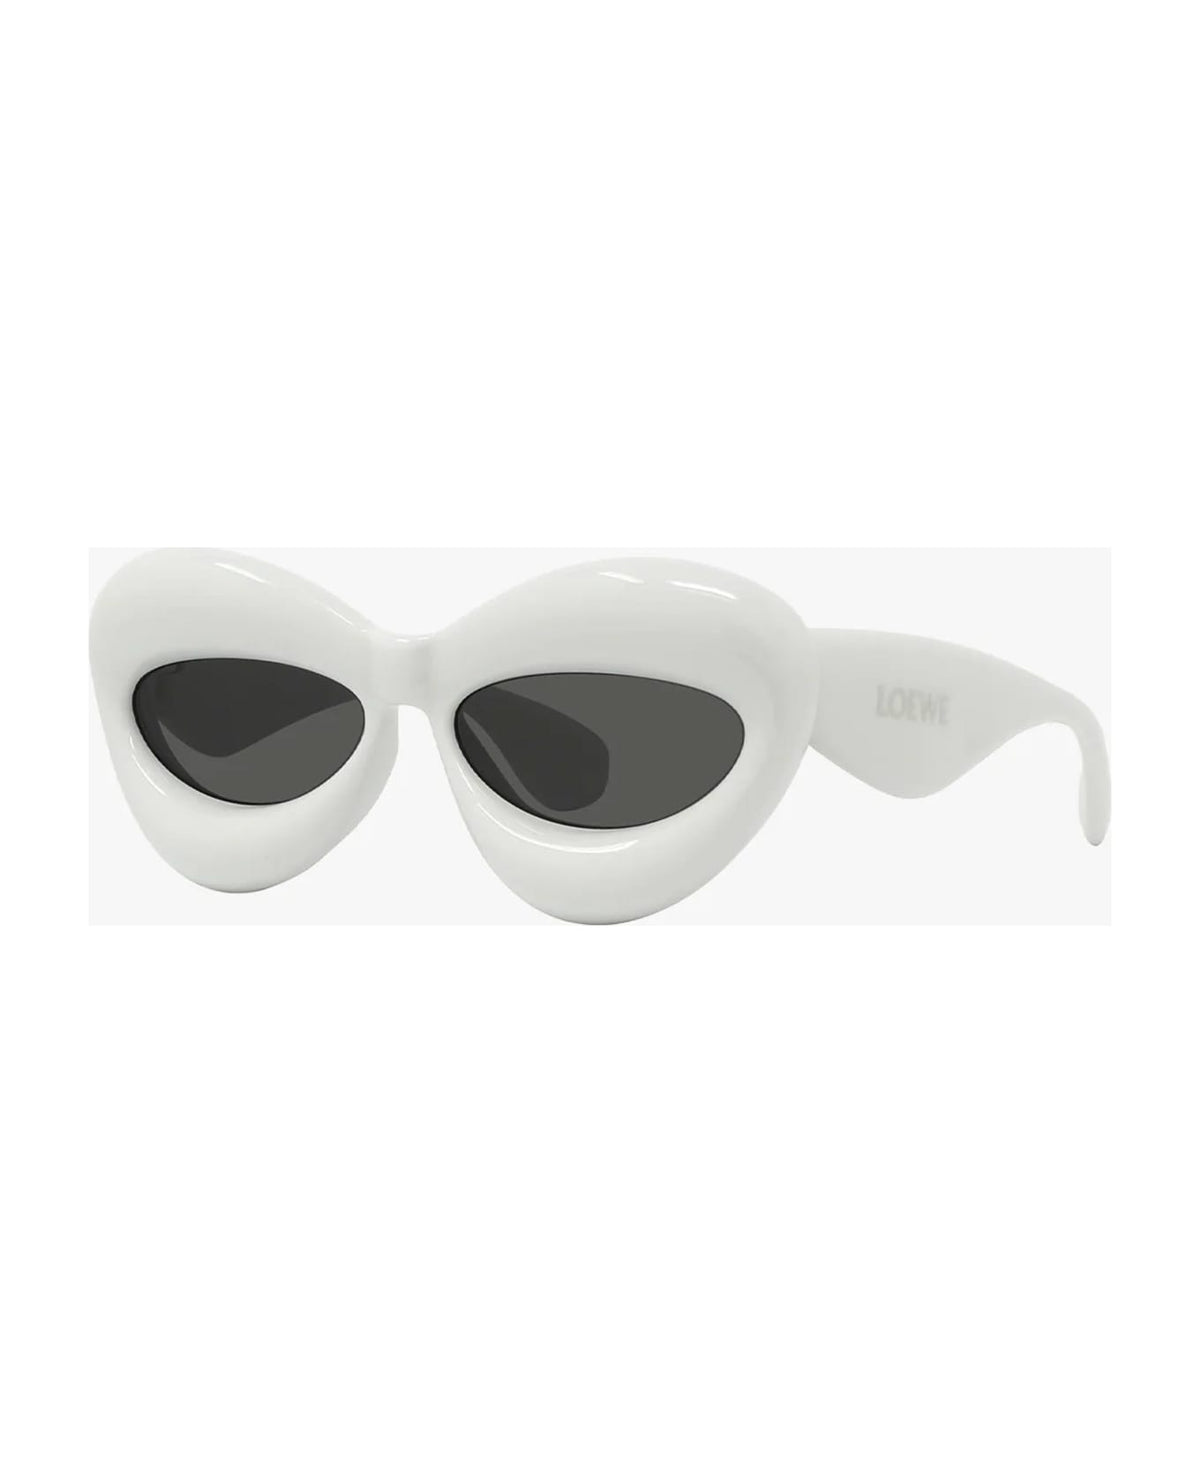 Lw40097i - White Sunglasses